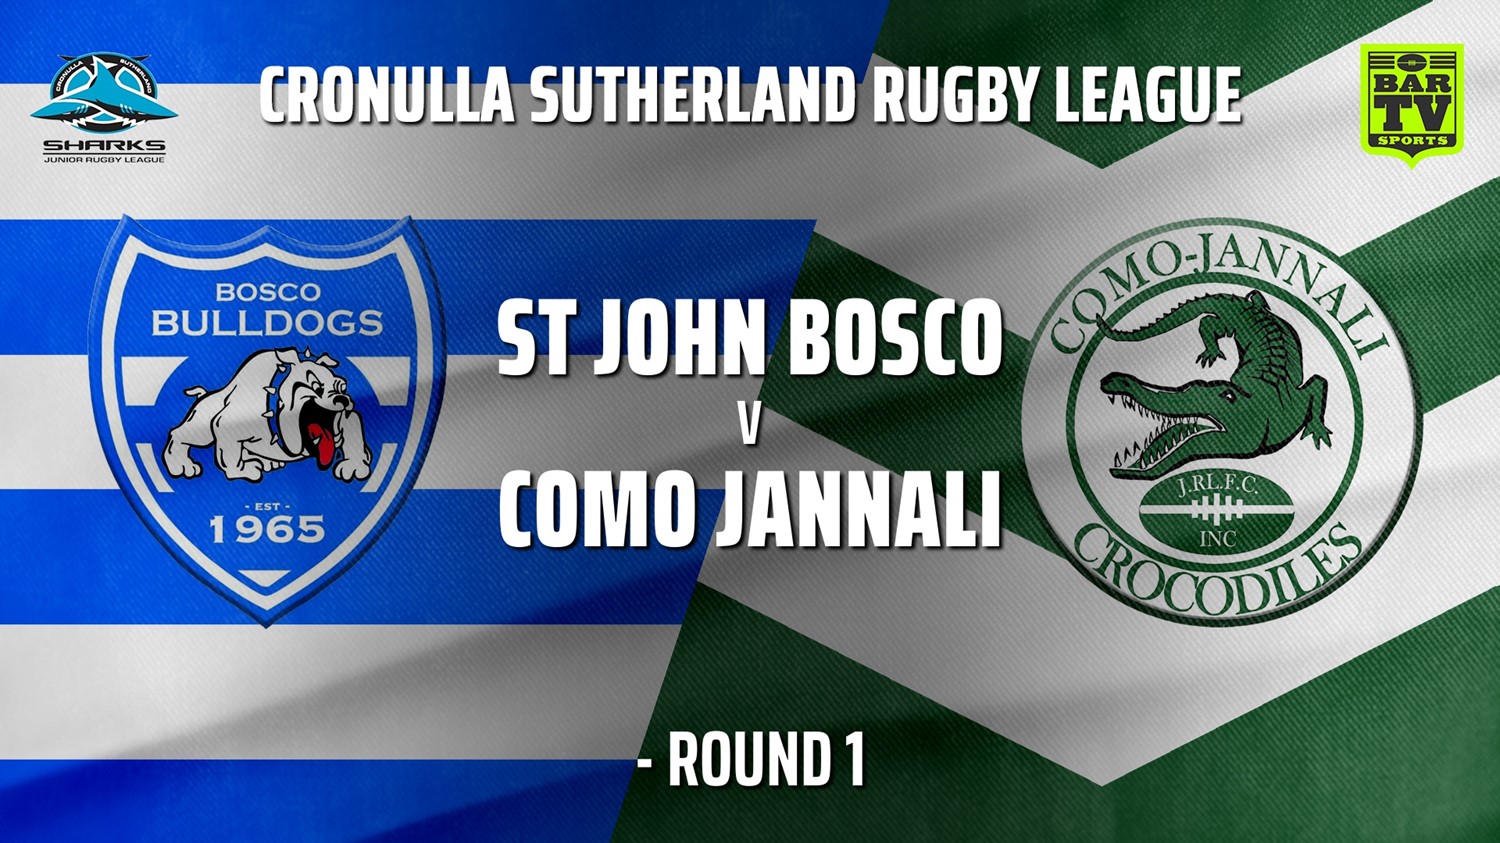 210501-Cronulla JRL Open Age Silver Round 1 - St John Bosco Bulldogs v Como Jannali Crocodiles (4) Minigame Slate Image